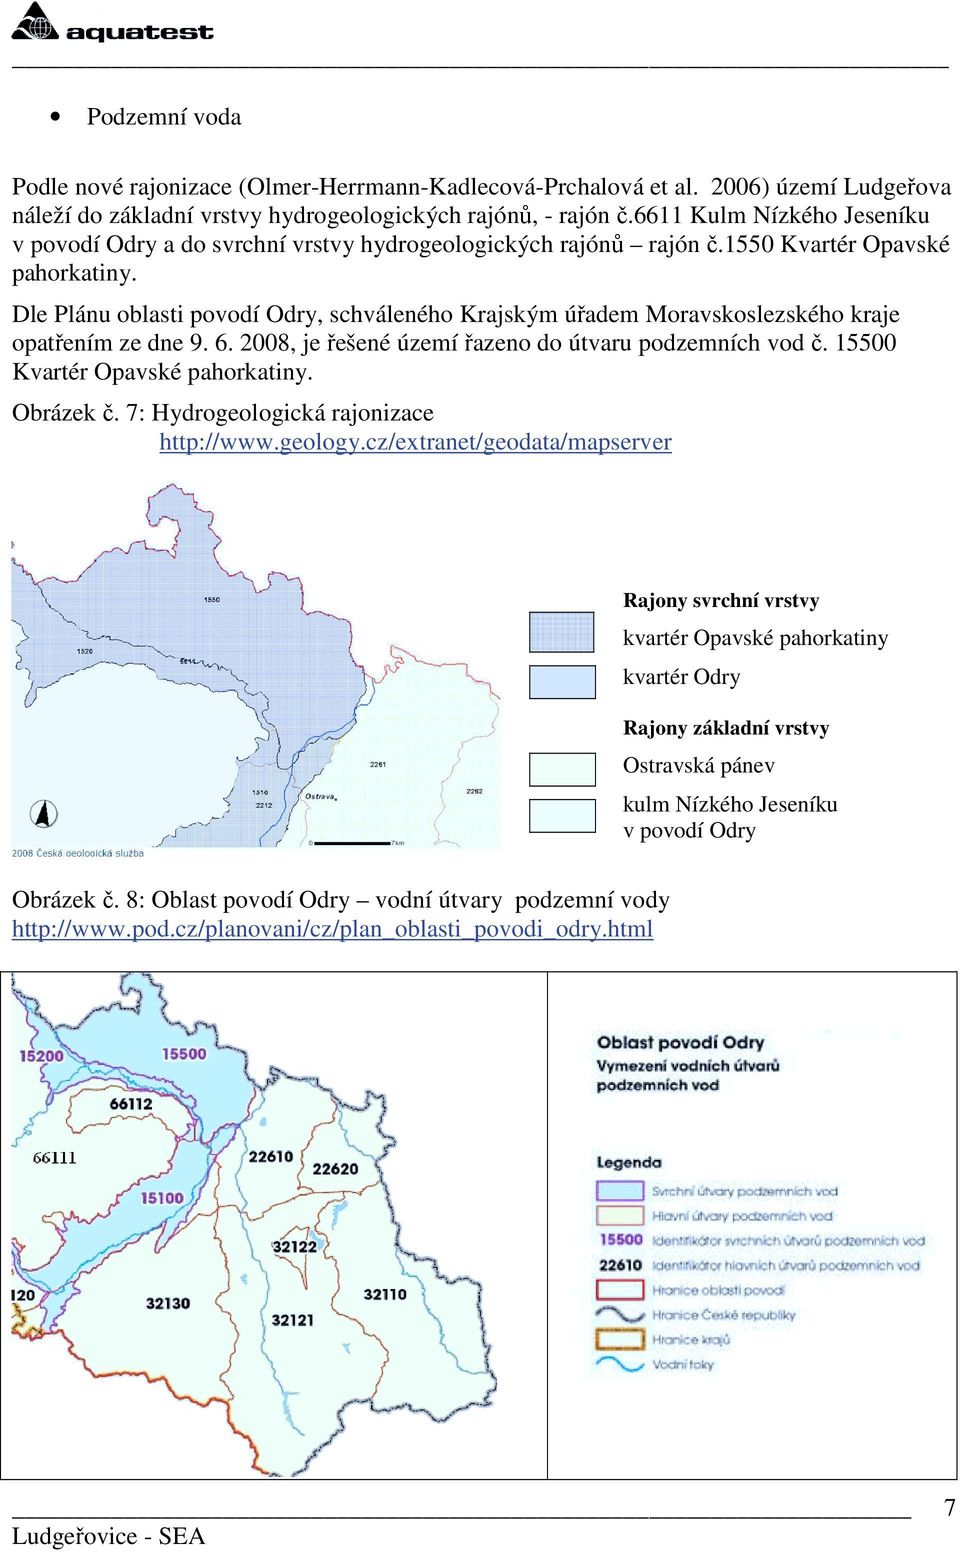 Dle Plánu oblasti povodí Odry, schváleného Krajským úřadem Moravskoslezského kraje opatřením ze dne 9. 6. 2008, je řešené území řazeno do útvaru podzemních vod č. 15500 Kvartér Opavské pahorkatiny.